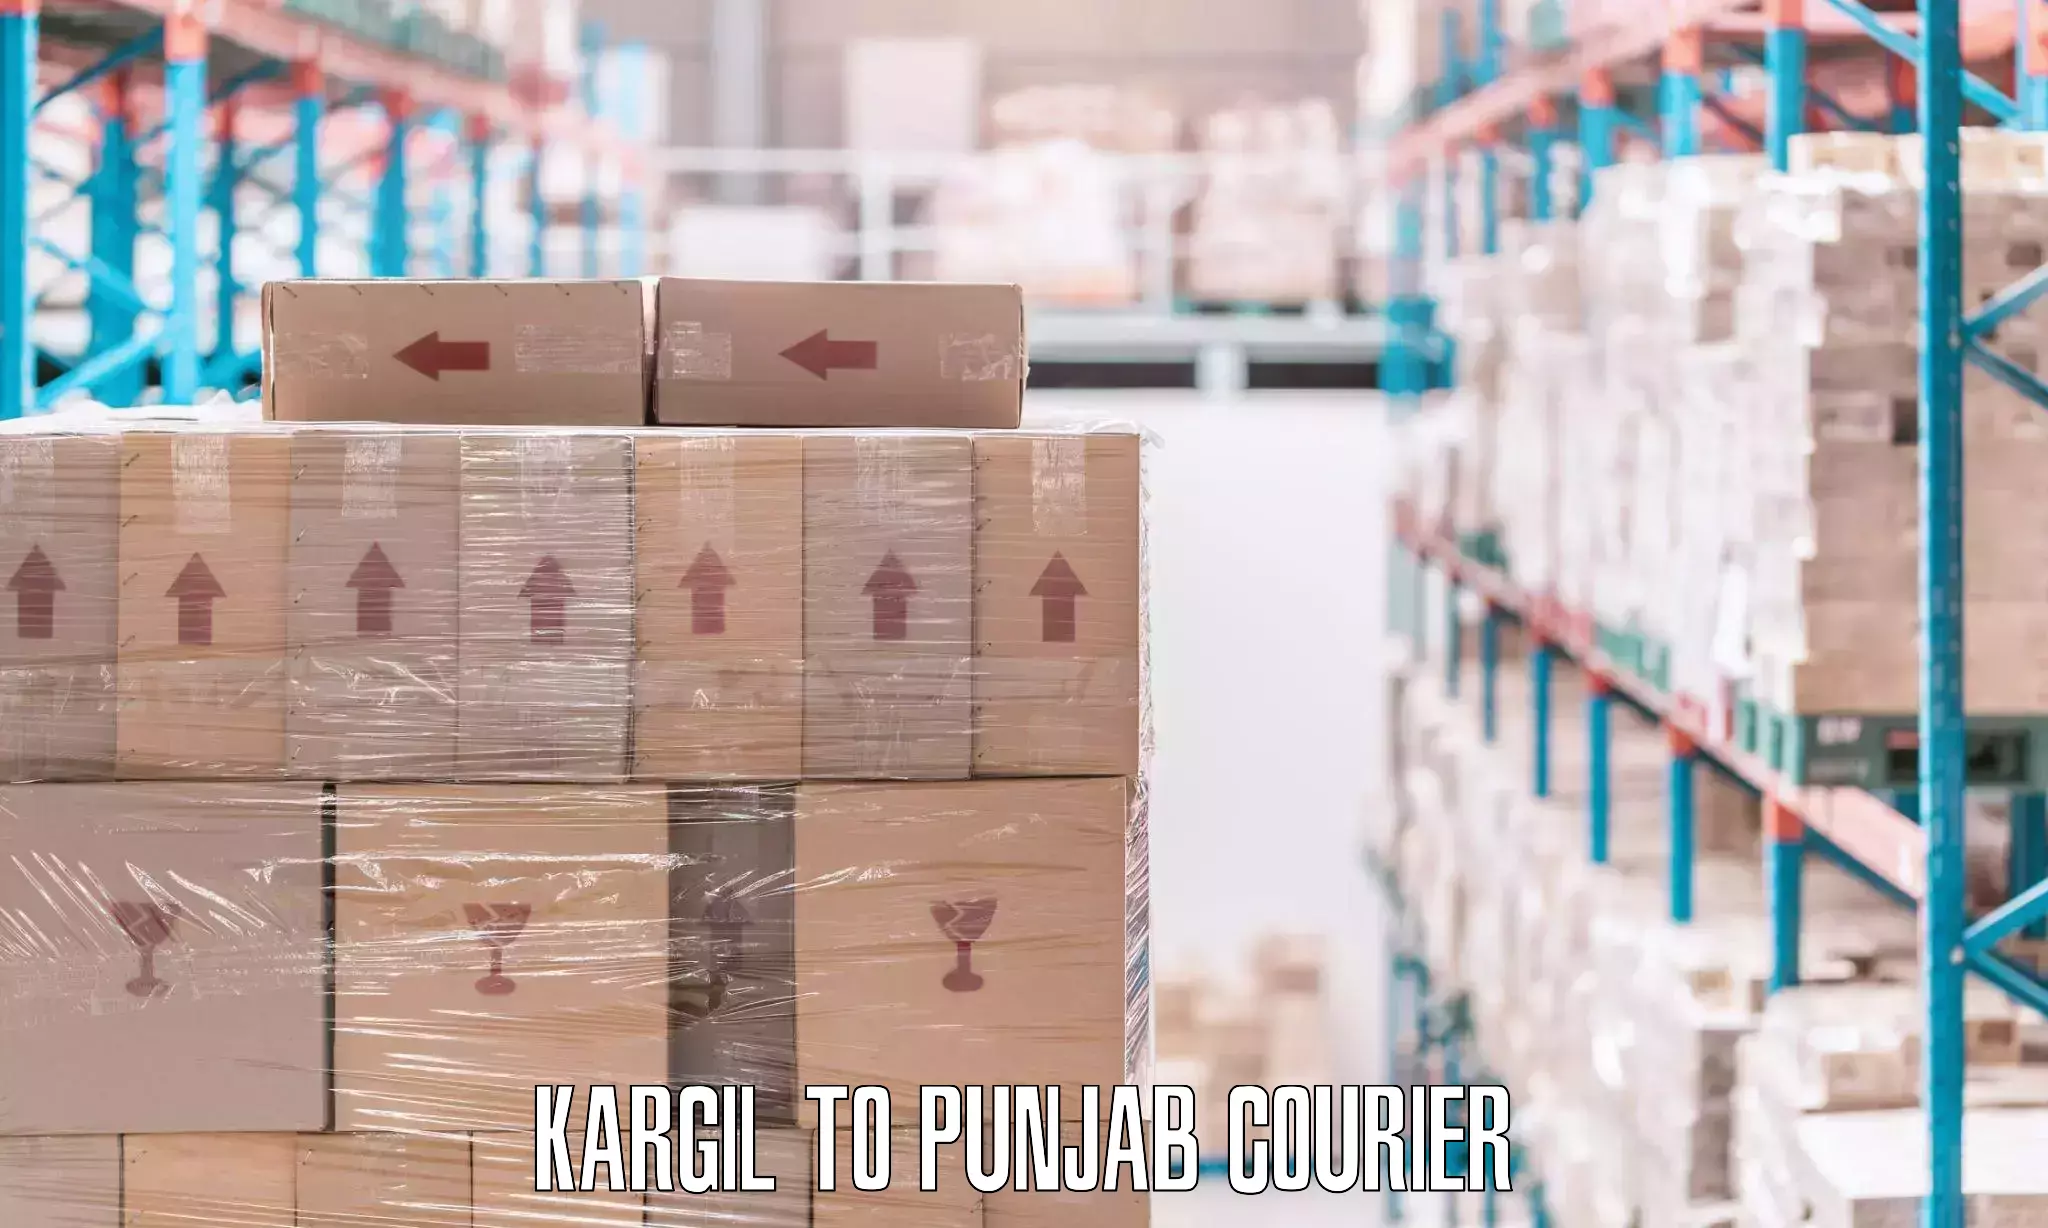 Comprehensive relocation services Kargil to Punjab